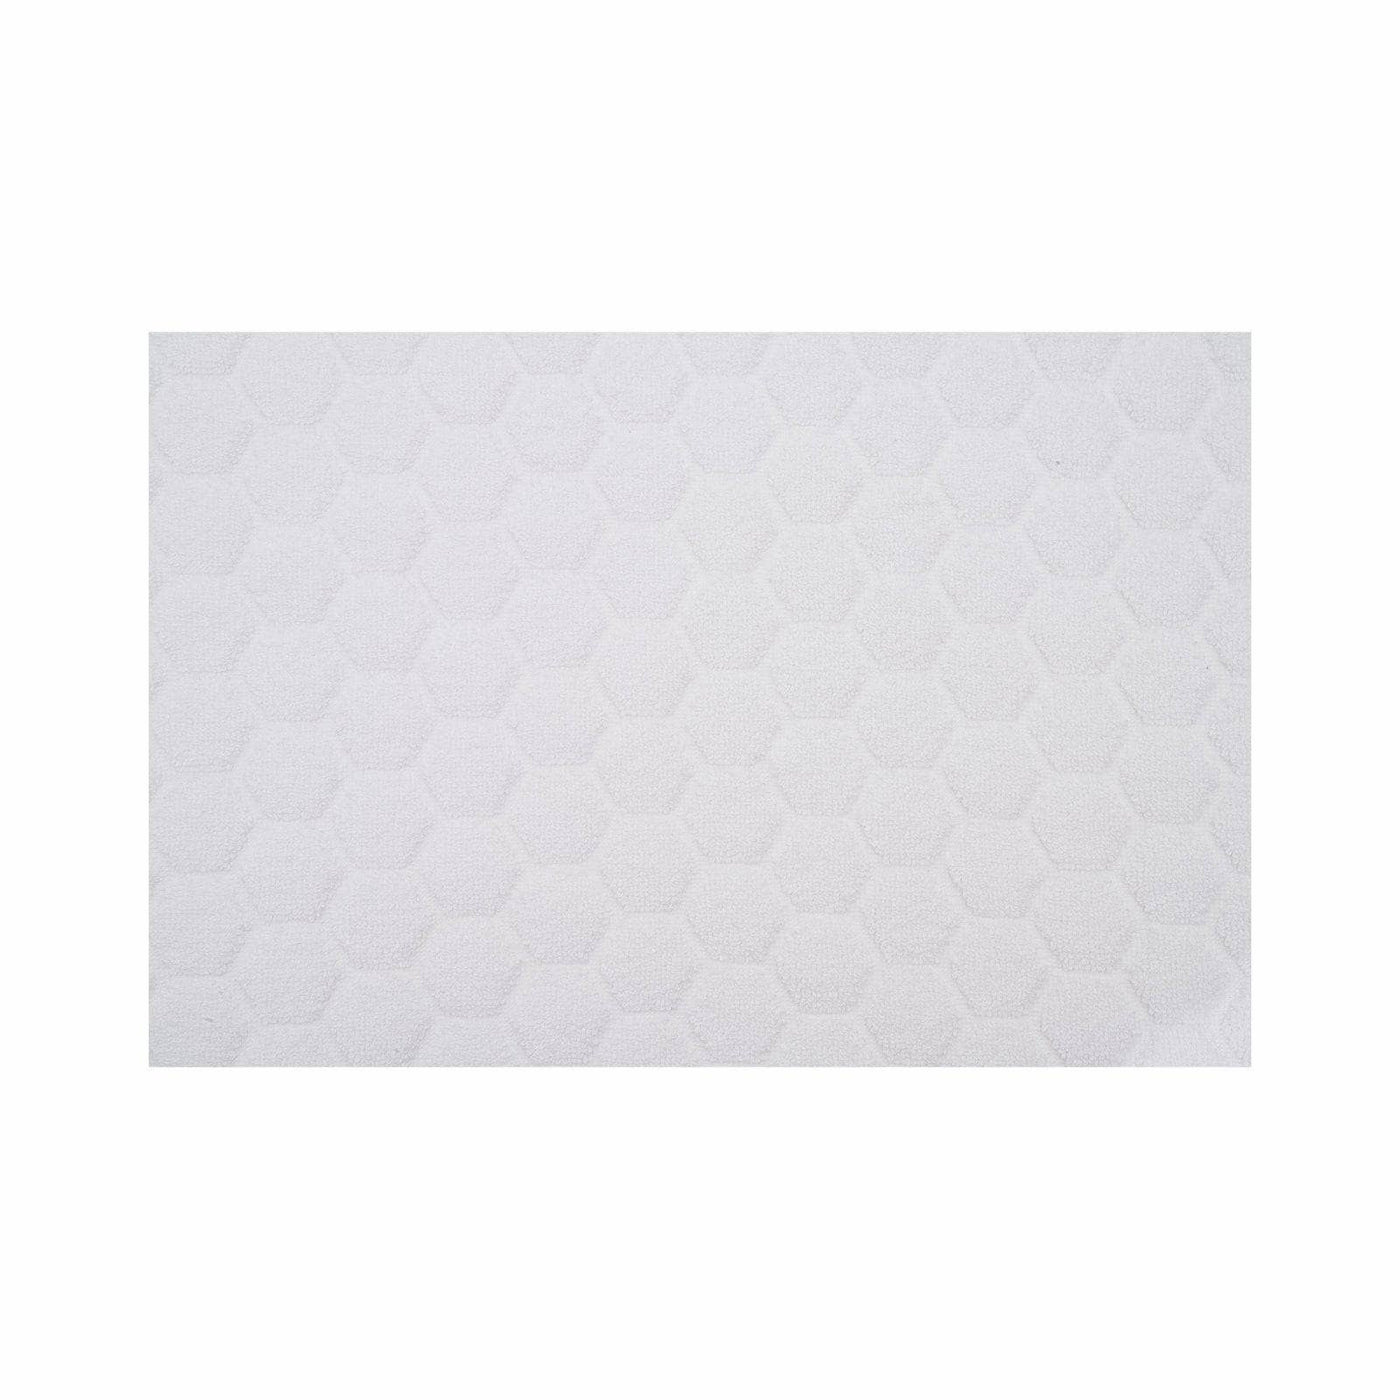 Gary Textured 100% Turkish Cotton Bath Mat, White, 50x80 cm 2